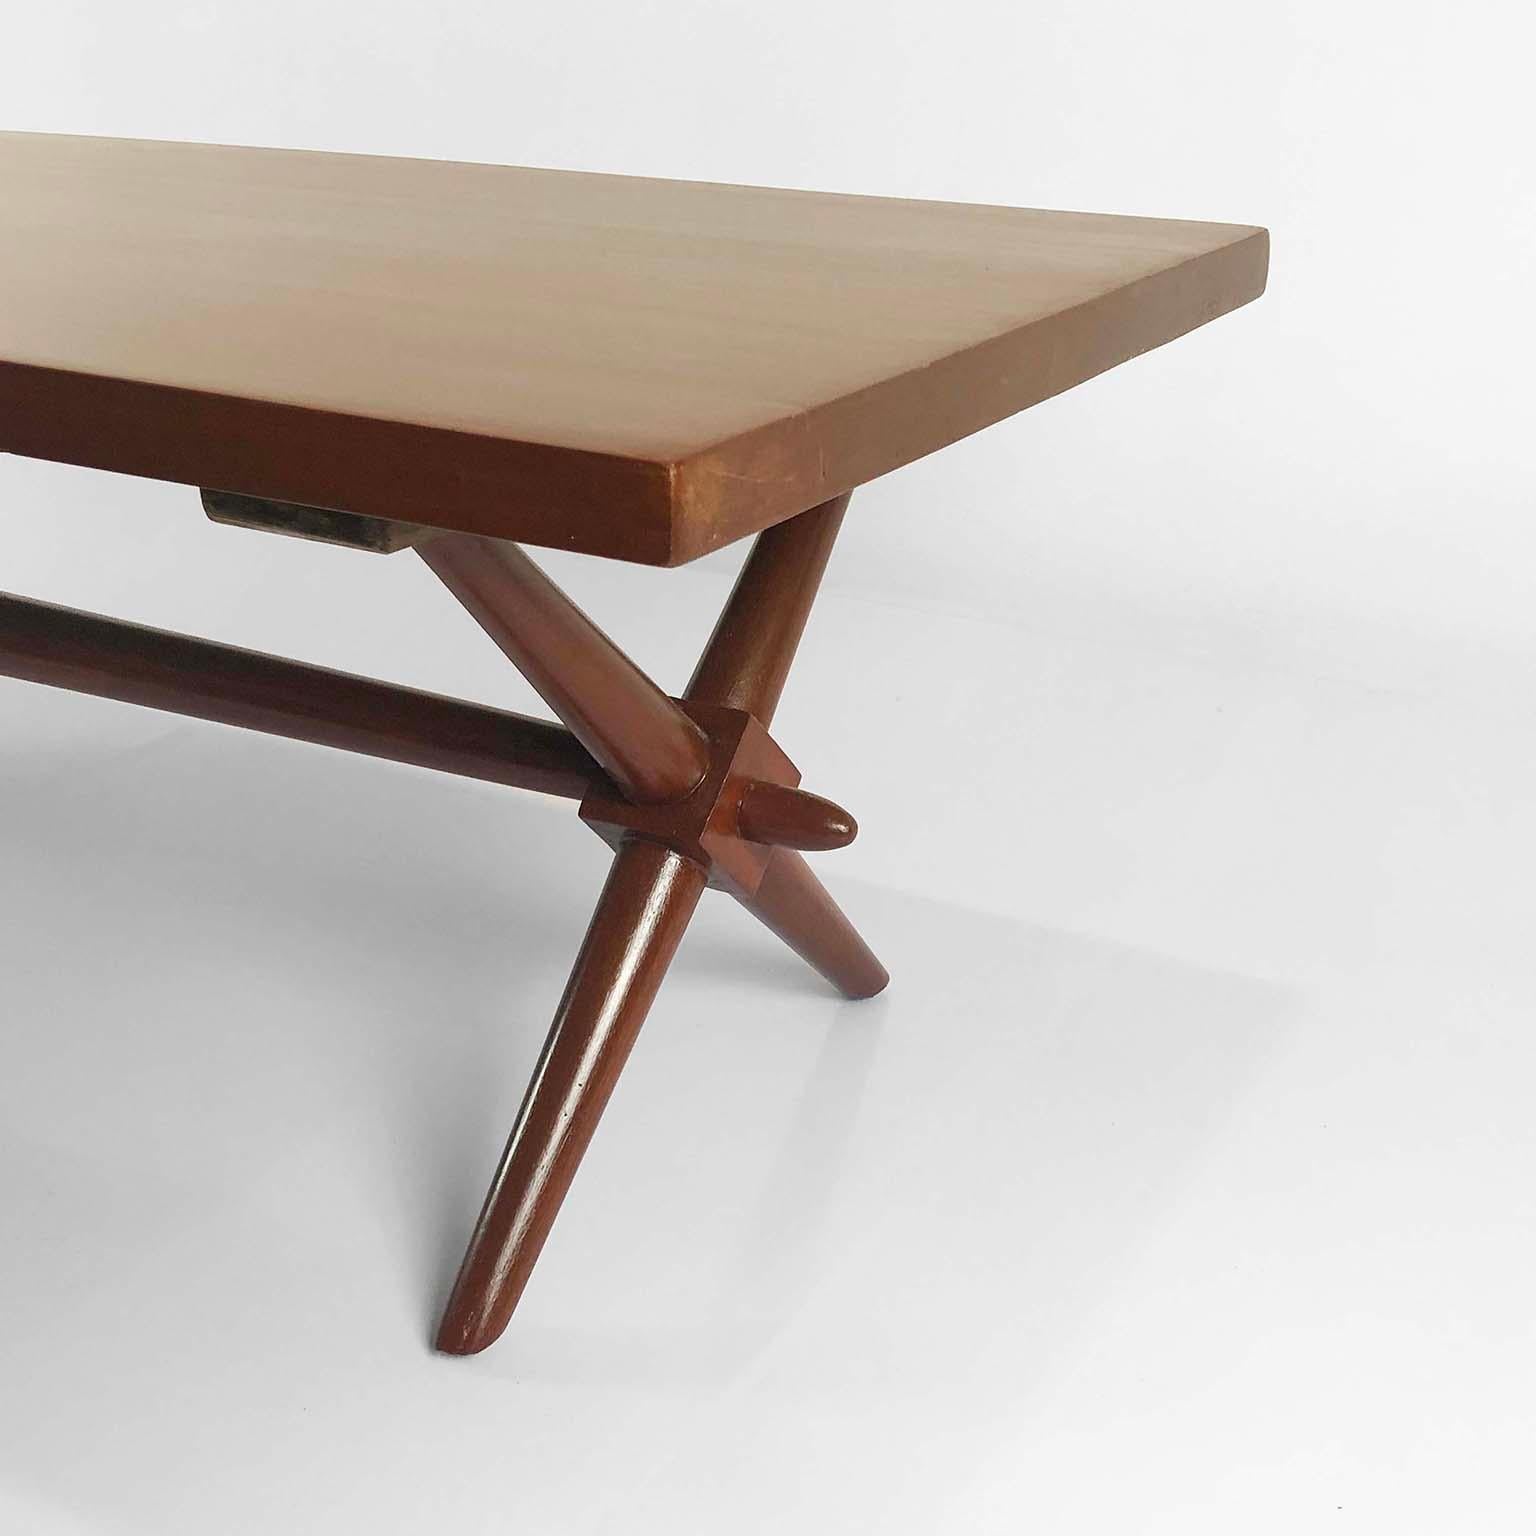 Mid-Century Modern American Modern Walnut Coffee Table Designed by Robsjohn Gibbings